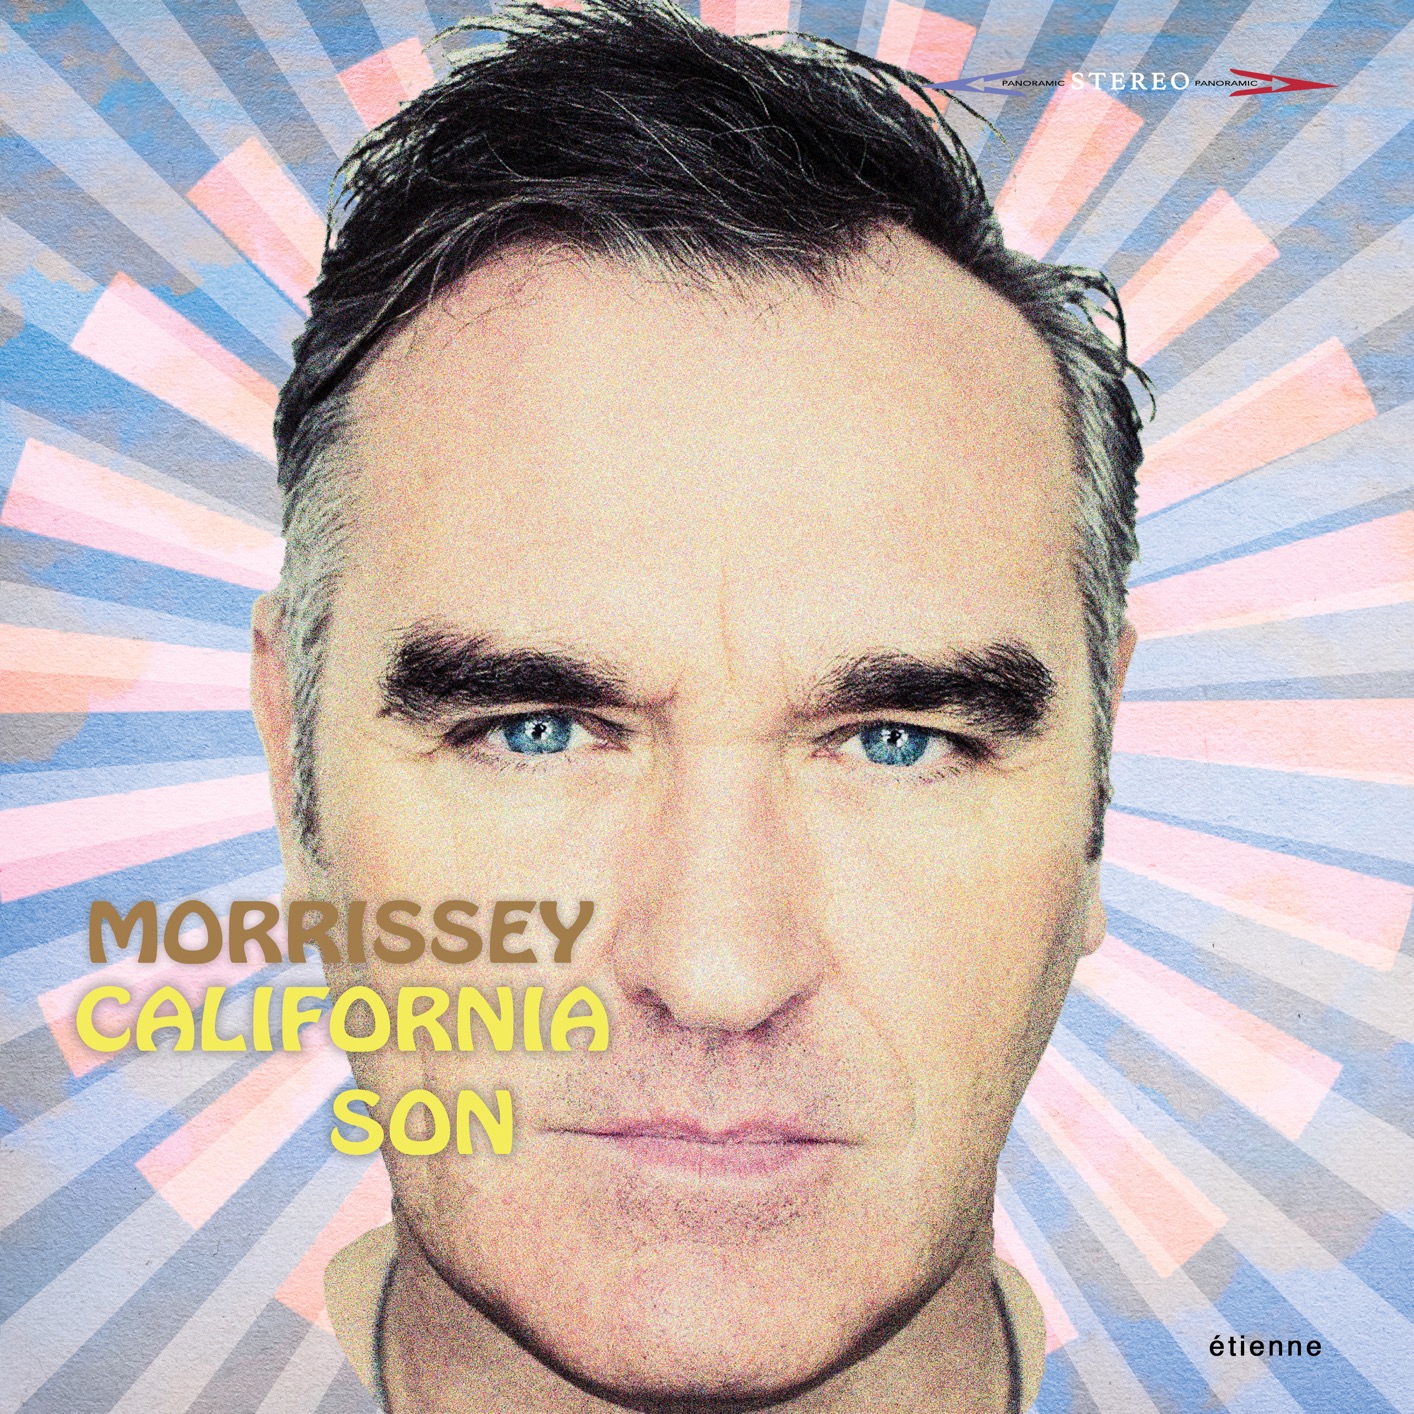 Morrissey - California Son (2019) [FLAC 24bit/96kHz]